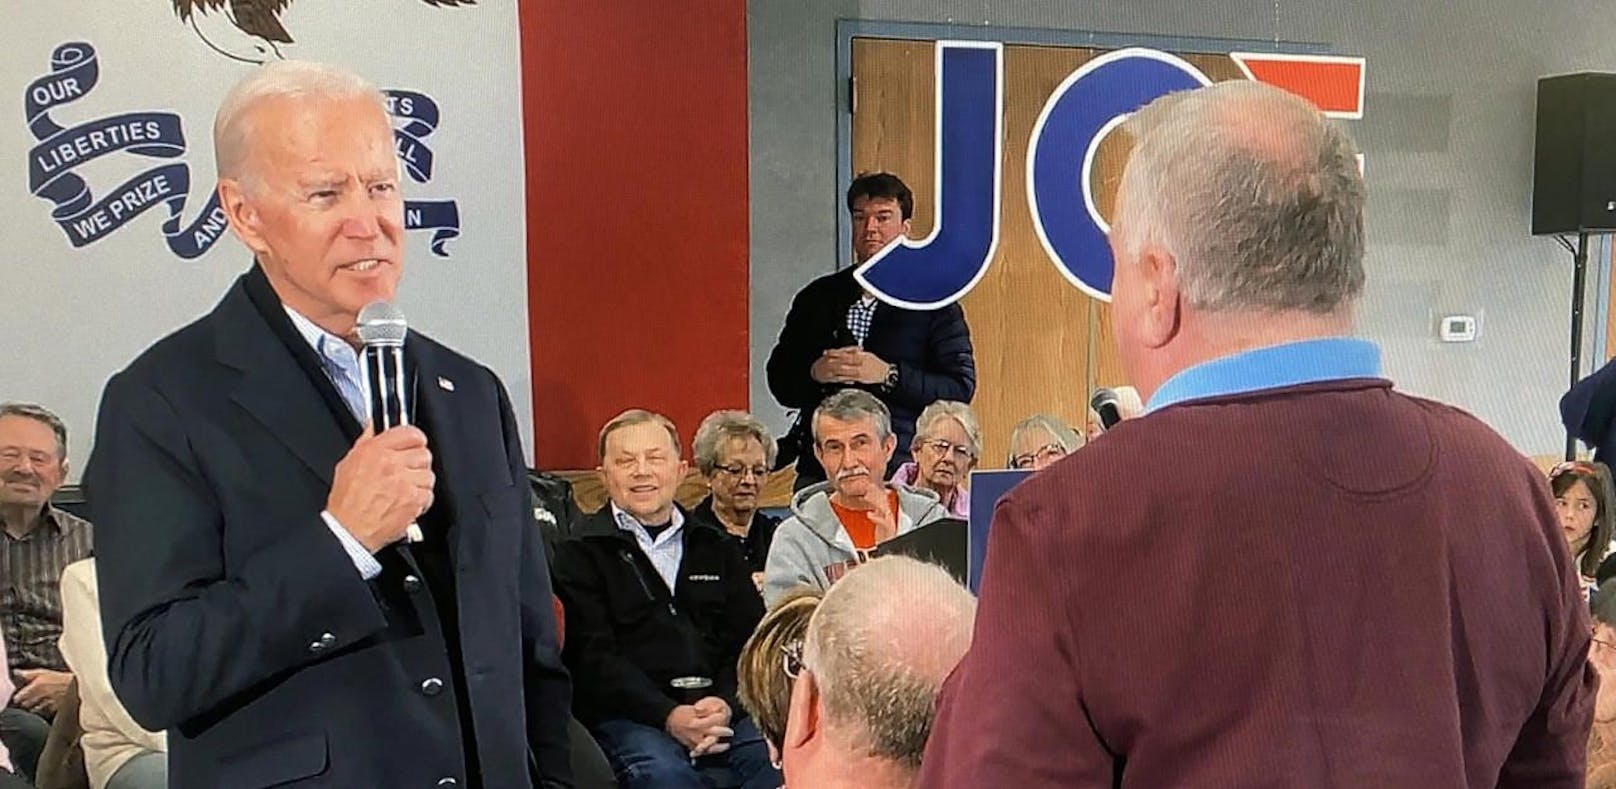 Der sonst so gelassene US-Präsidentschaftskandidat Joe Biden verliert bei einer Wahlkampfveranstaltung in Iowa (USA) seine Nerven